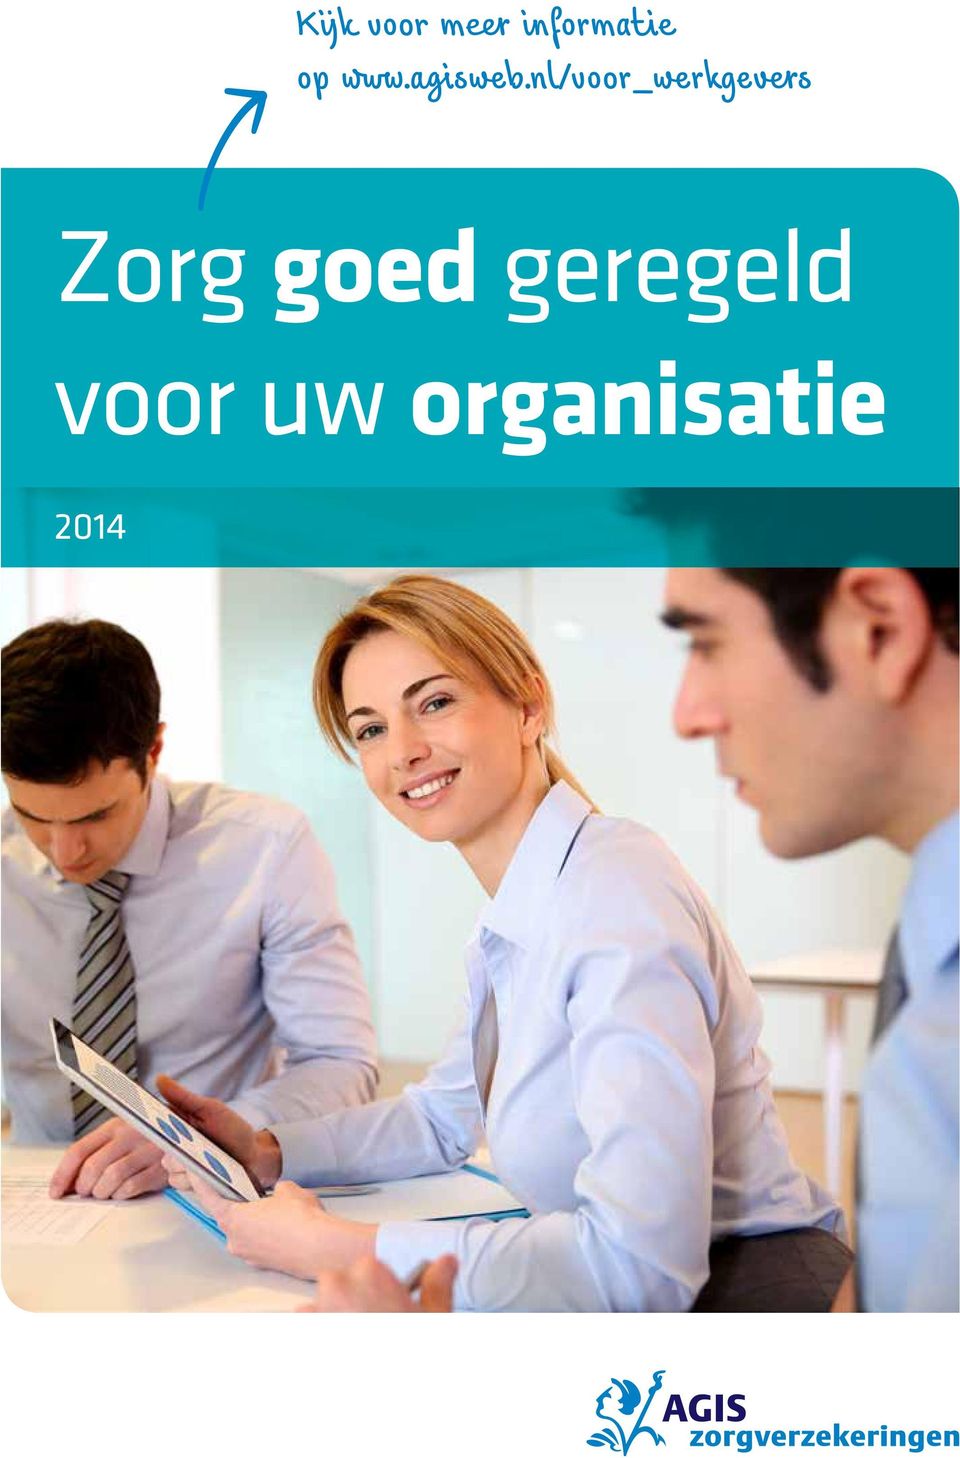 nl/voor_werkgevers Zorg